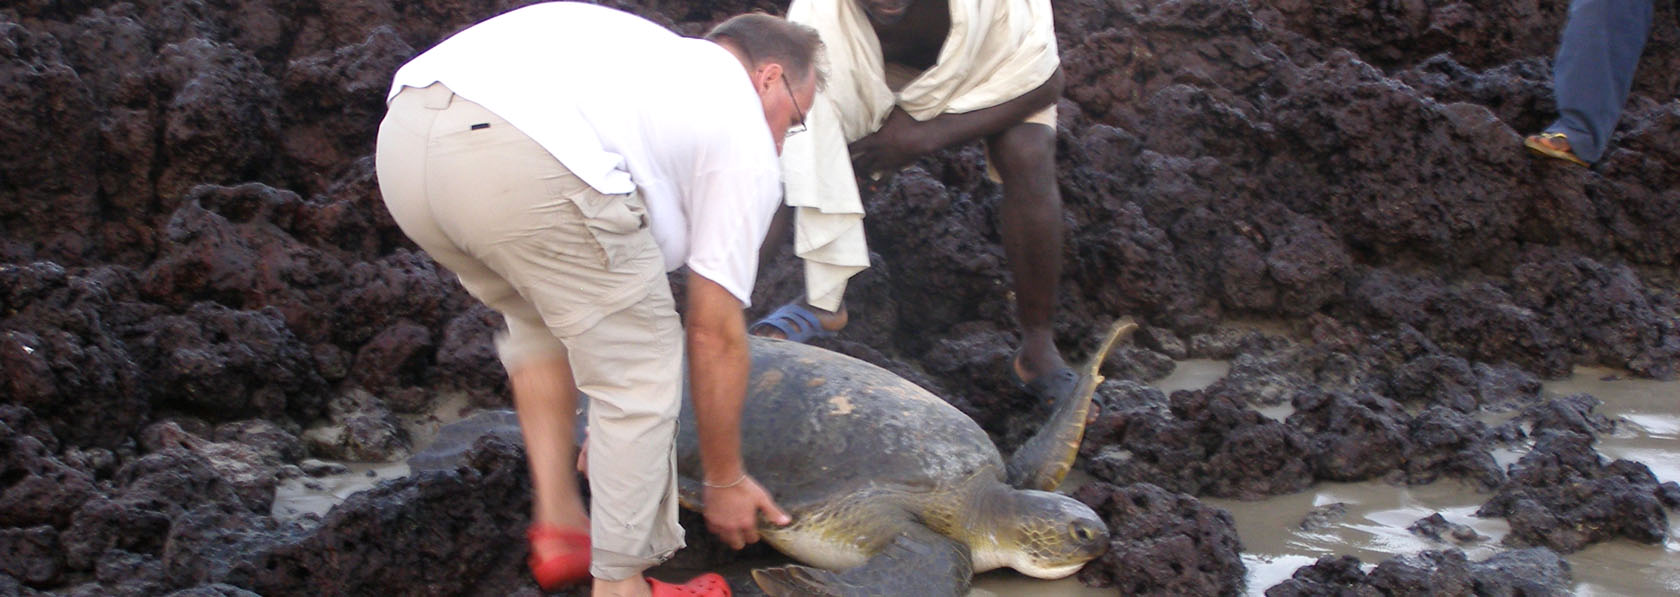 tortue verte sauvé par ecotouriste bienveillant lors d'un séjour ecotourisme